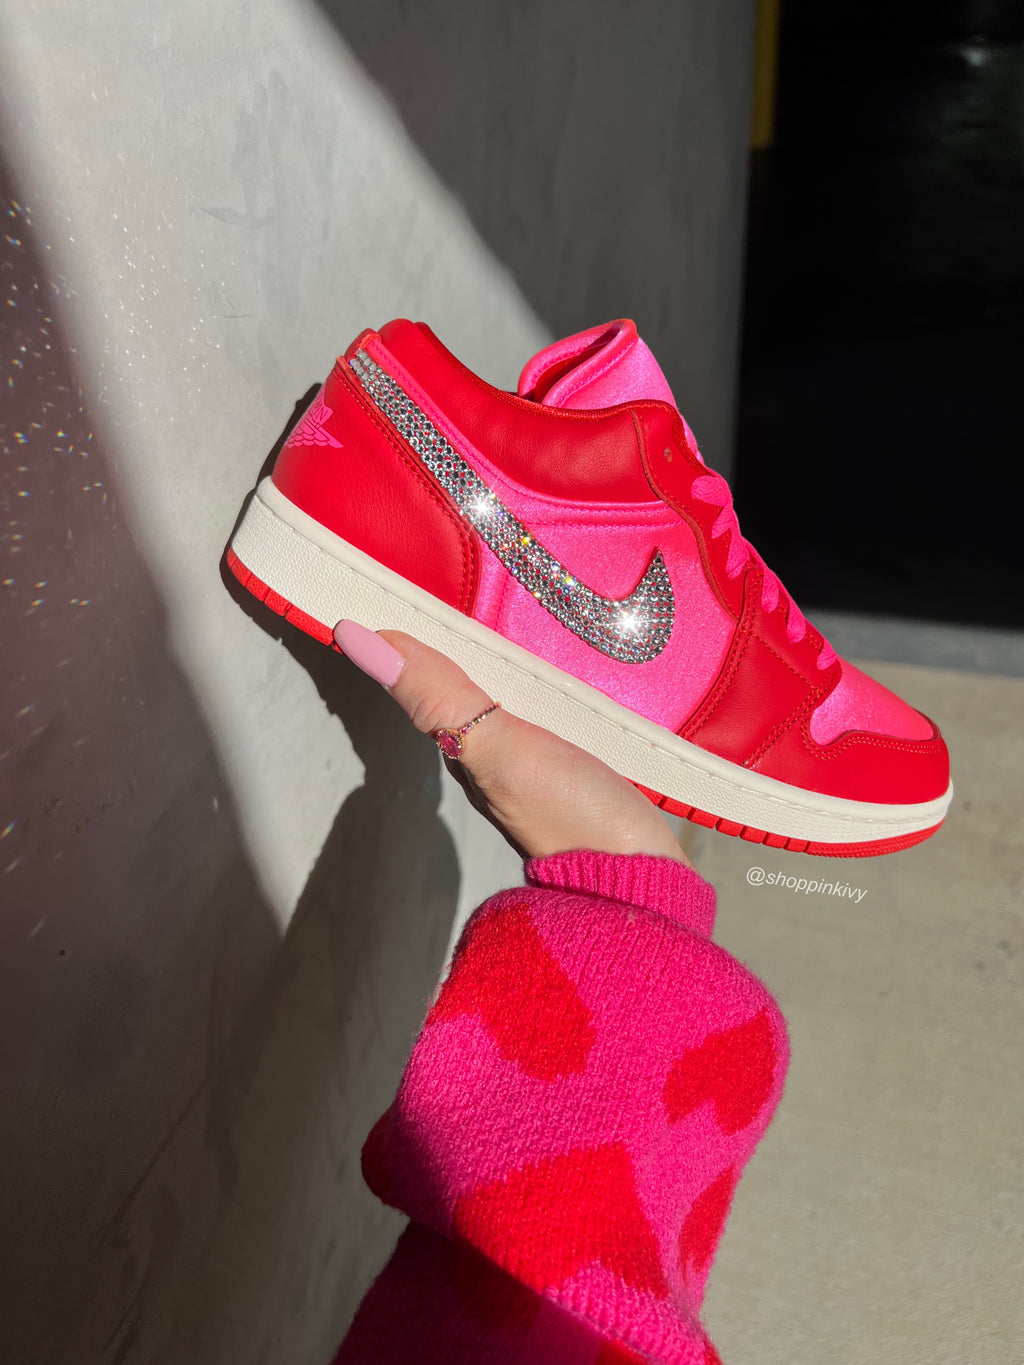 Red Pink Satin Swarovski Women’s Air Jordan 1 Low Shoes